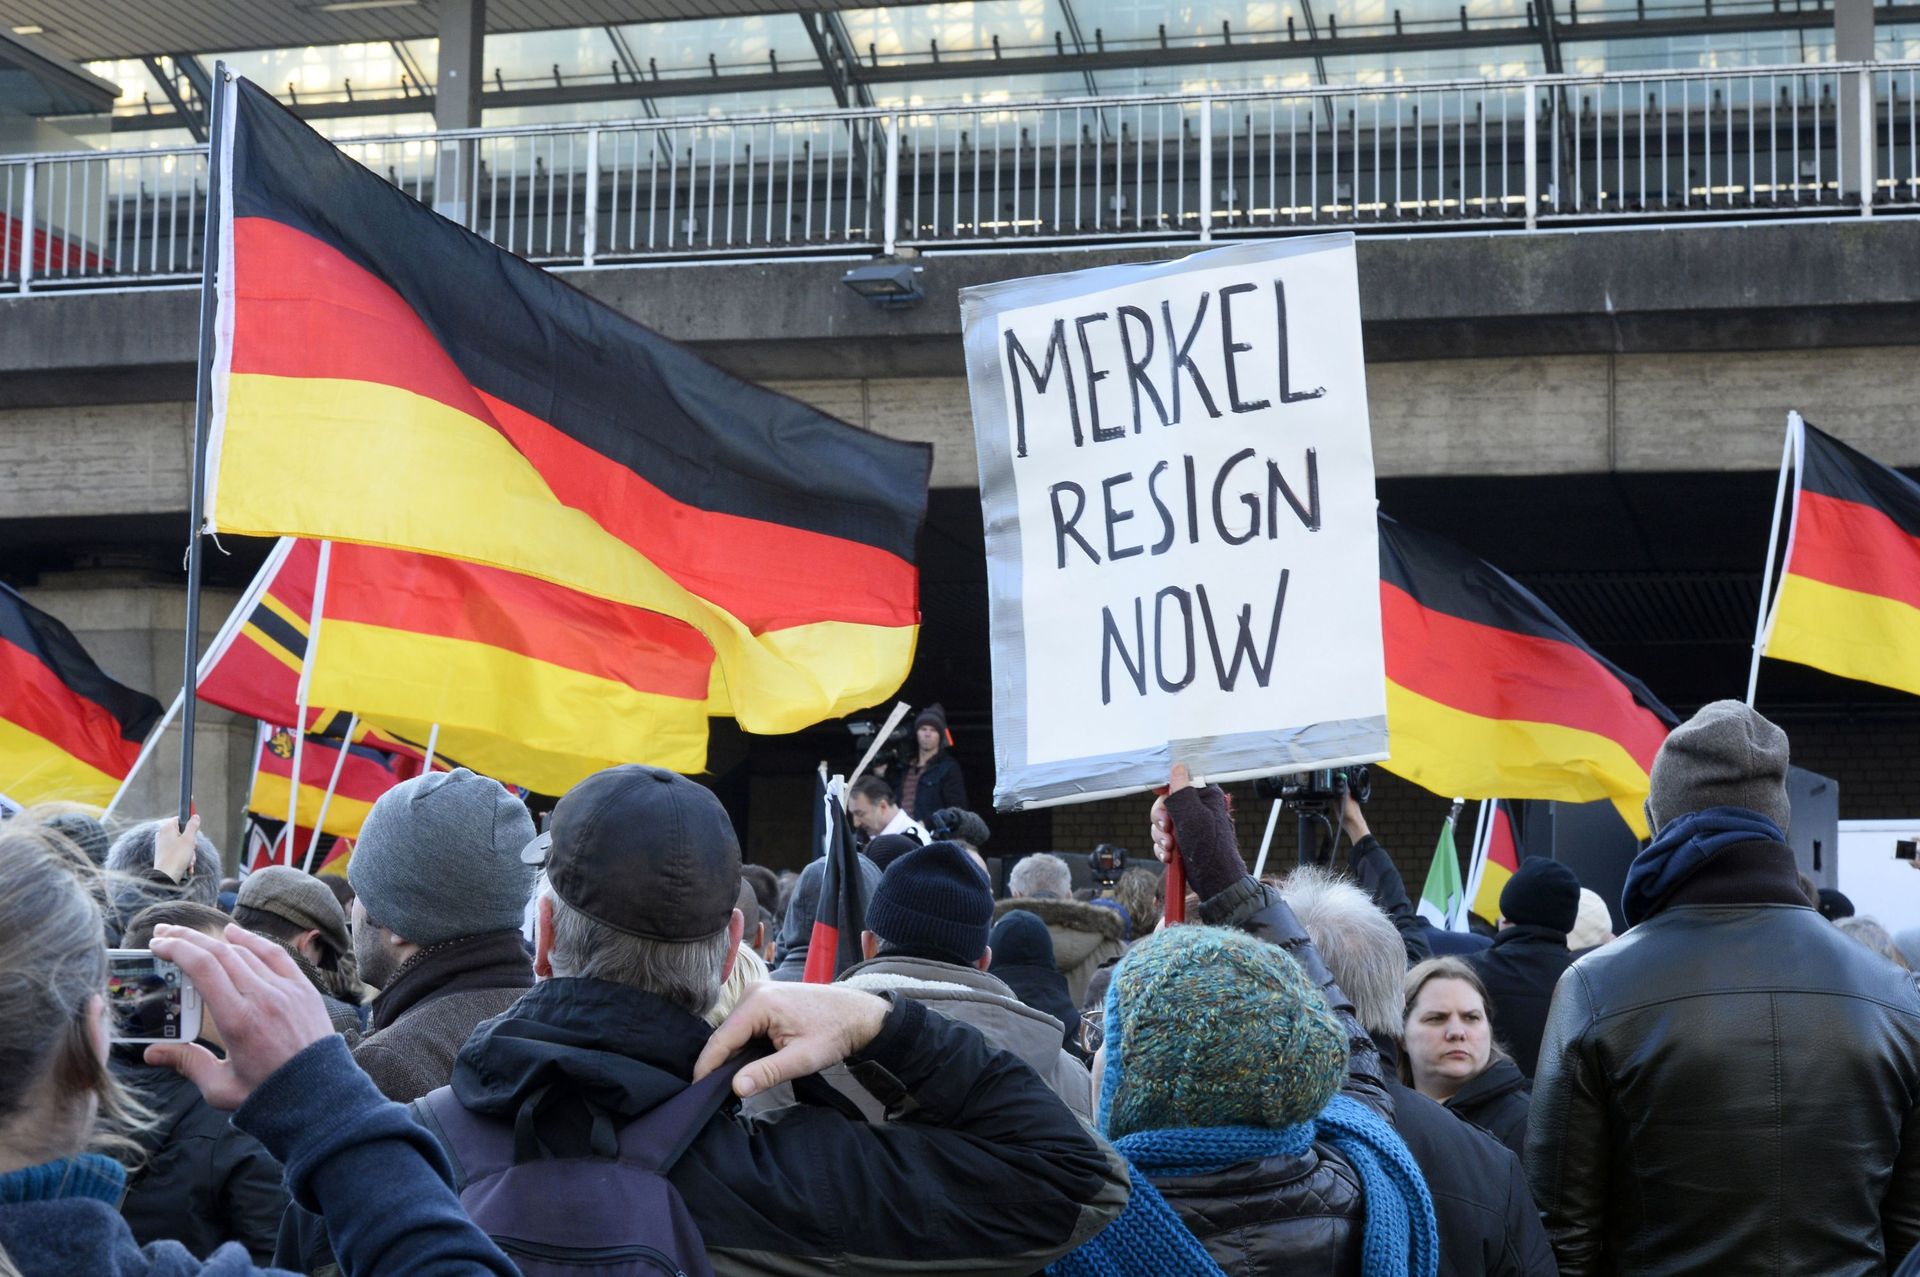 Des partisans d'extrême droite allemands manifestent à la gare de Cologne le 9 janvier 2016. En scandant "Merkel out" et en agitant des drapeaux allemands, les partisans du mouvement xénophobe PEGIDA exprimaient leur colère contre les migrants.